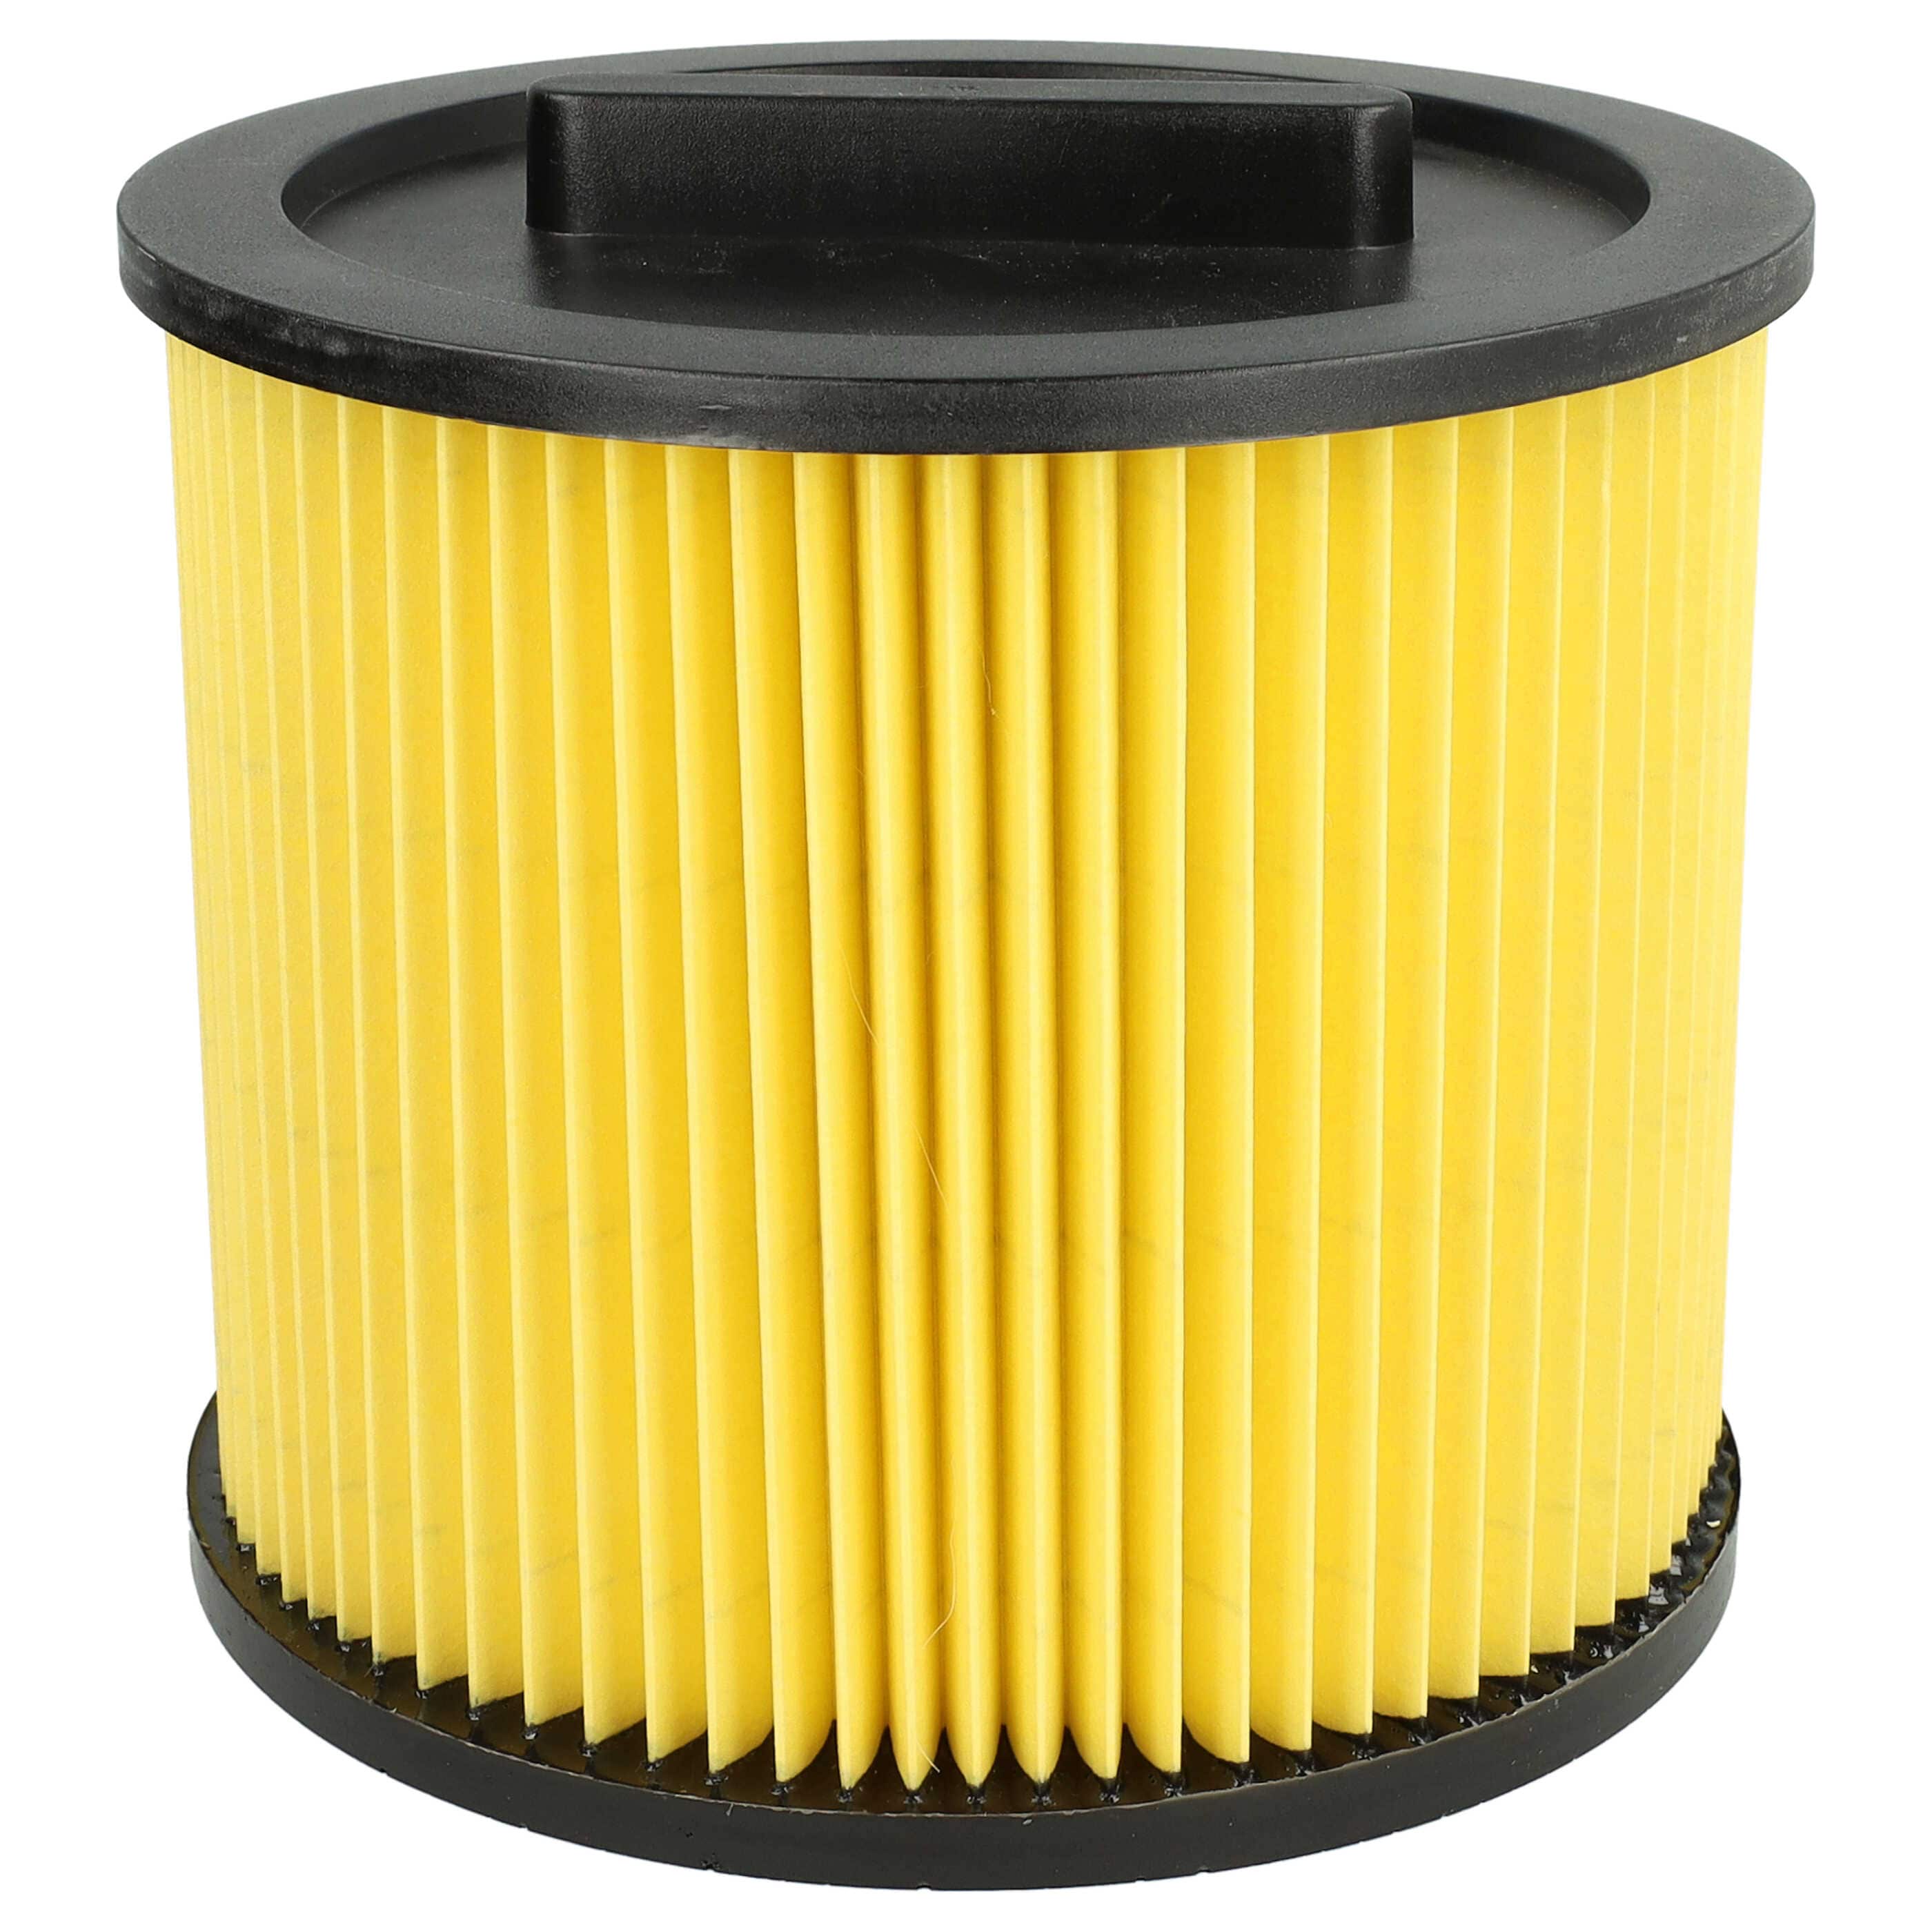 Filtro reemplaza Einhell 2351113 para aspiradora filtro de cartucho, negro / amarillo